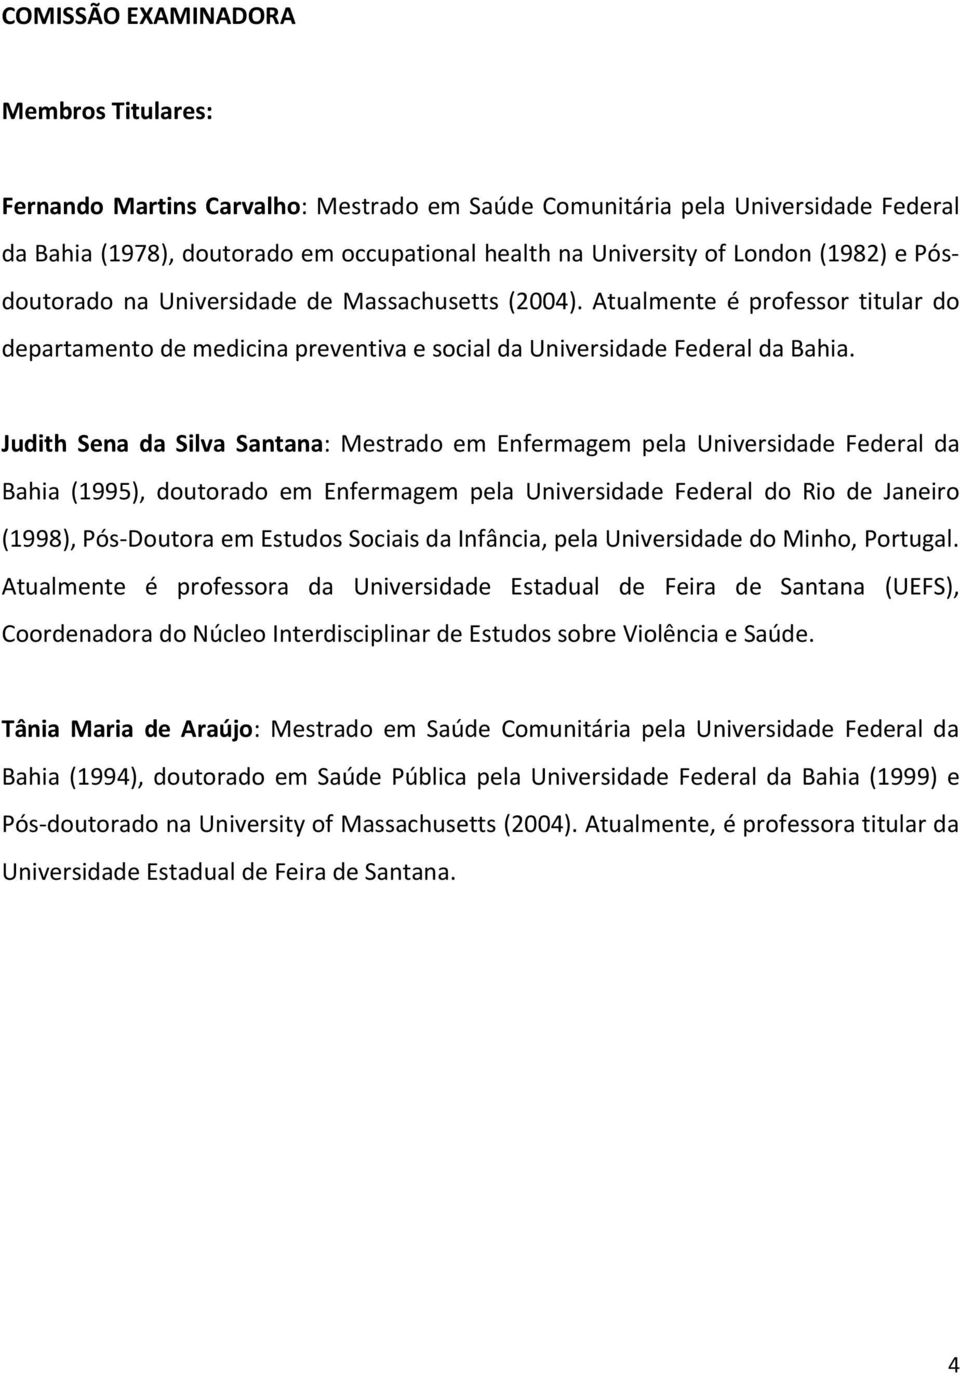 Judith Sena da Silva Santana: Mestrado em Enfermagem pela Universidade Federal da Bahia (1995), doutorado em Enfermagem pela Universidade Federal do Rio de Janeiro (1998), Pós-Doutora em Estudos